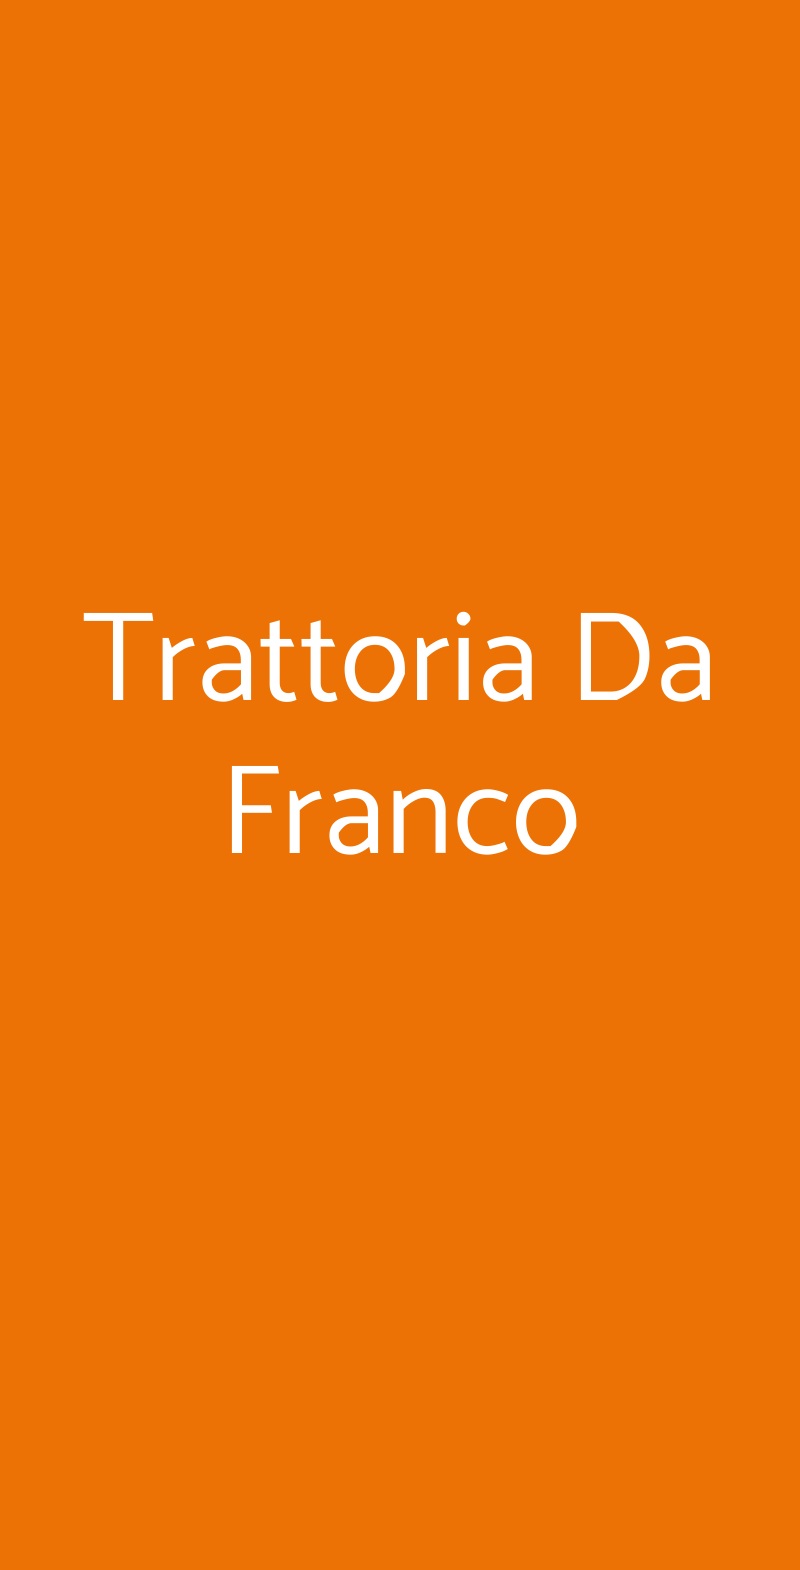 Trattoria Da Franco Parma menù 1 pagina